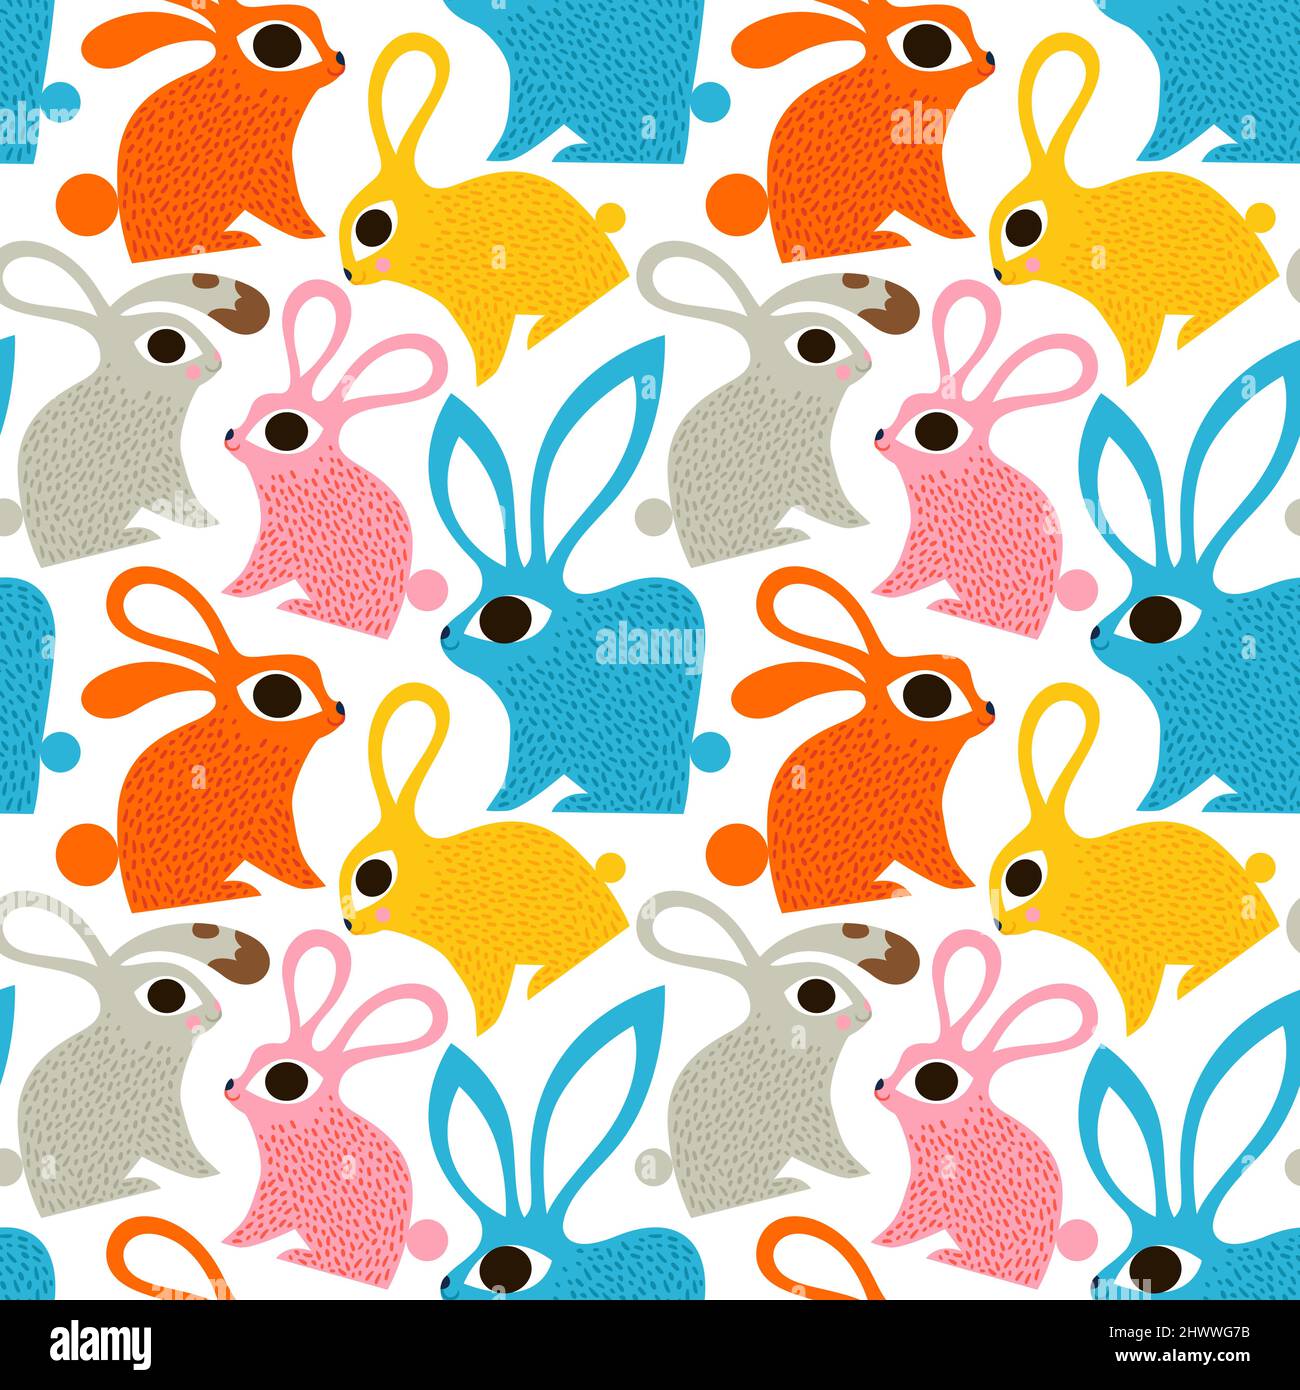 Ostern Kaninchen nahtlose Muster Illustration. Niedliche Hase Tier Hintergrund im Vintage-Folk-Art-Stil. Traditionelles skandinavisches Design für Frühlingsholida Stock Vektor